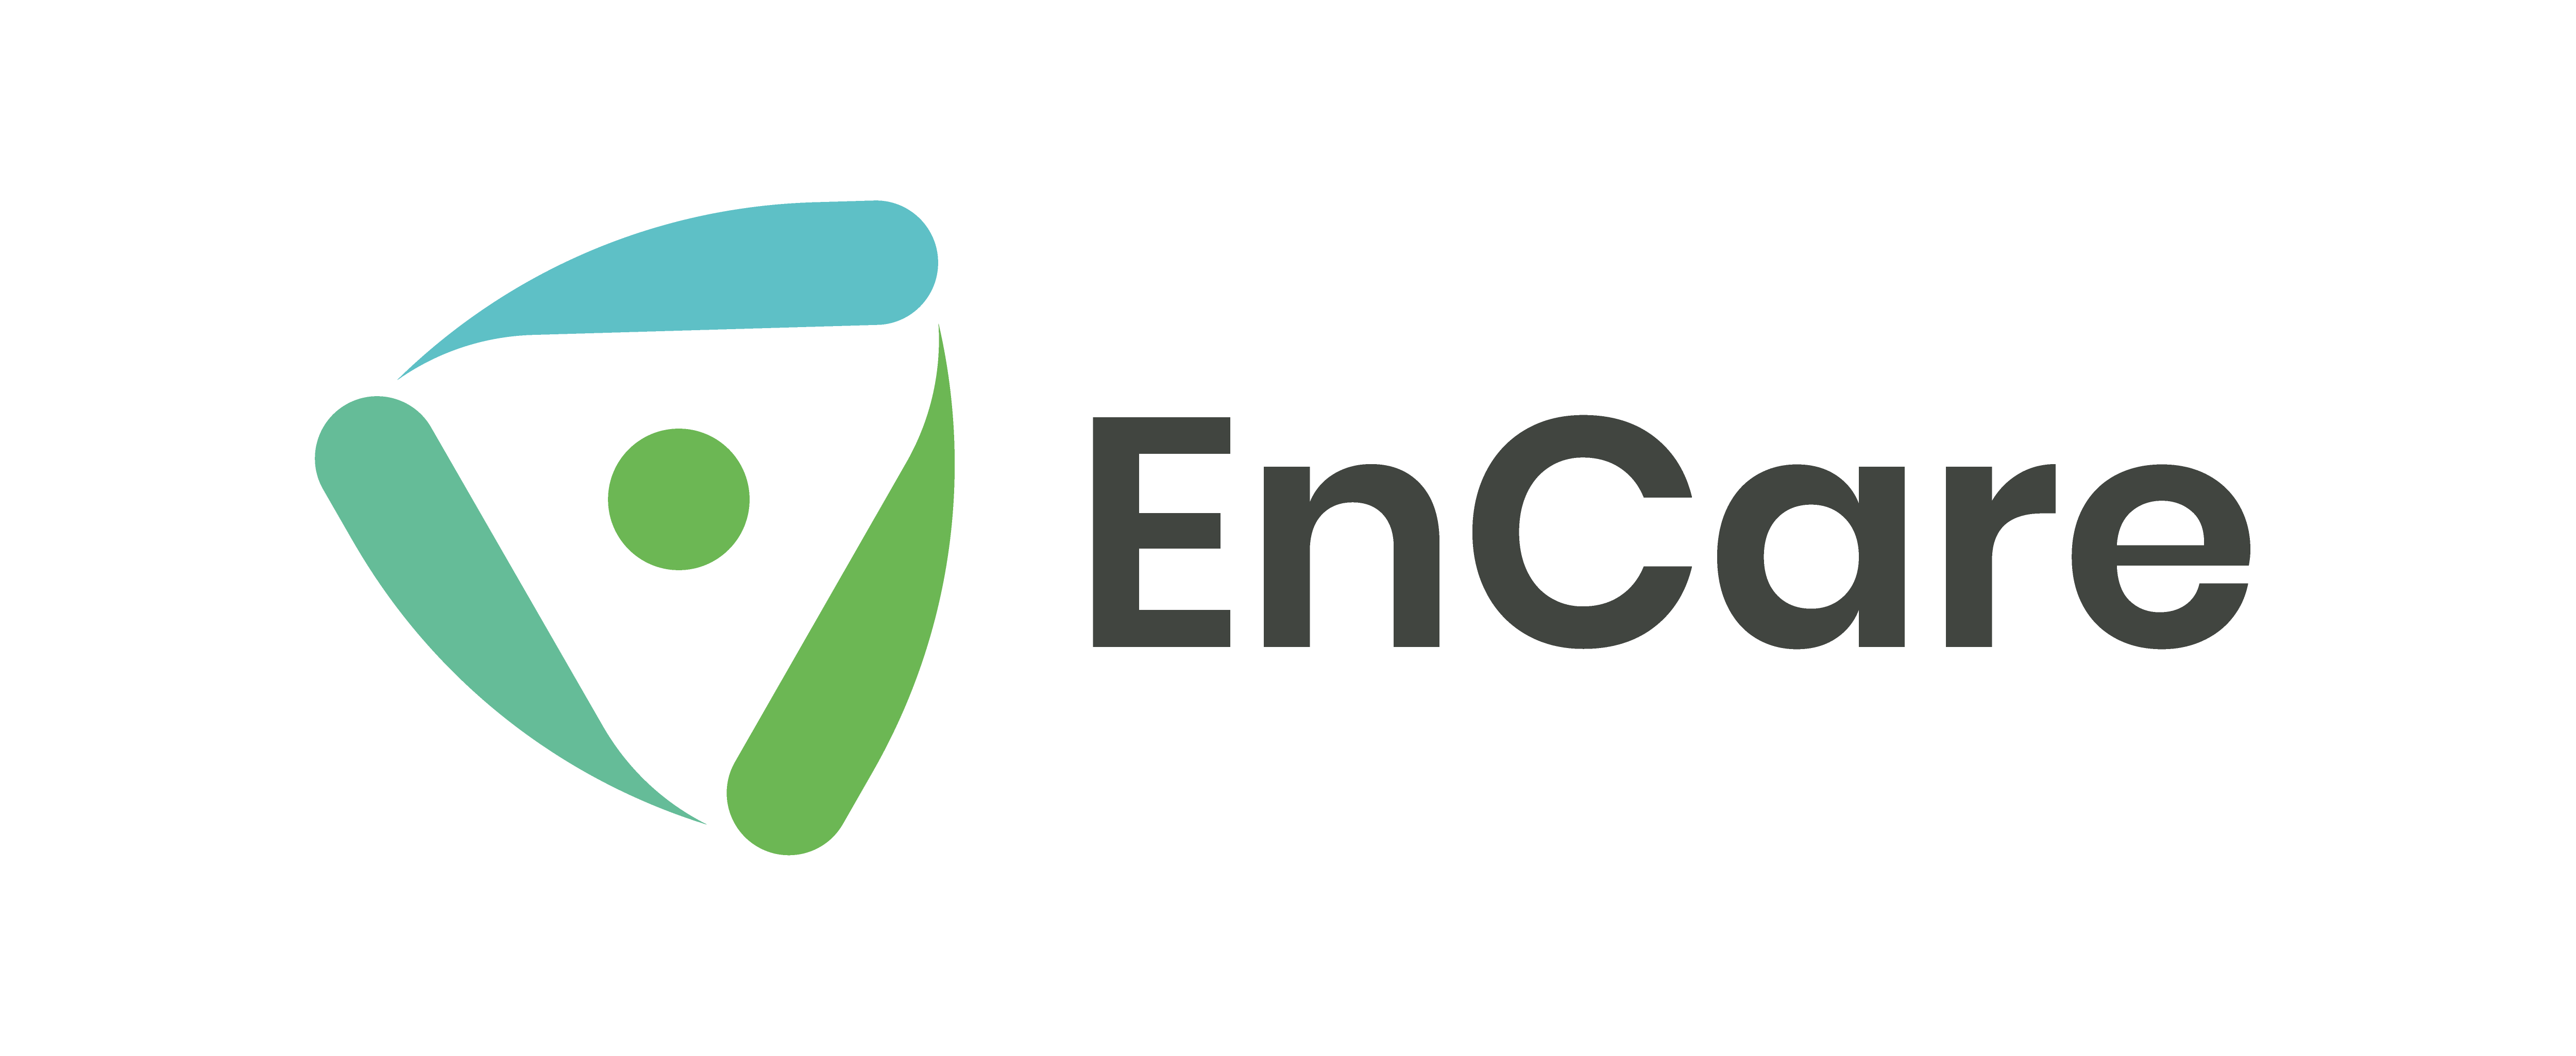 Encare-Logo.png